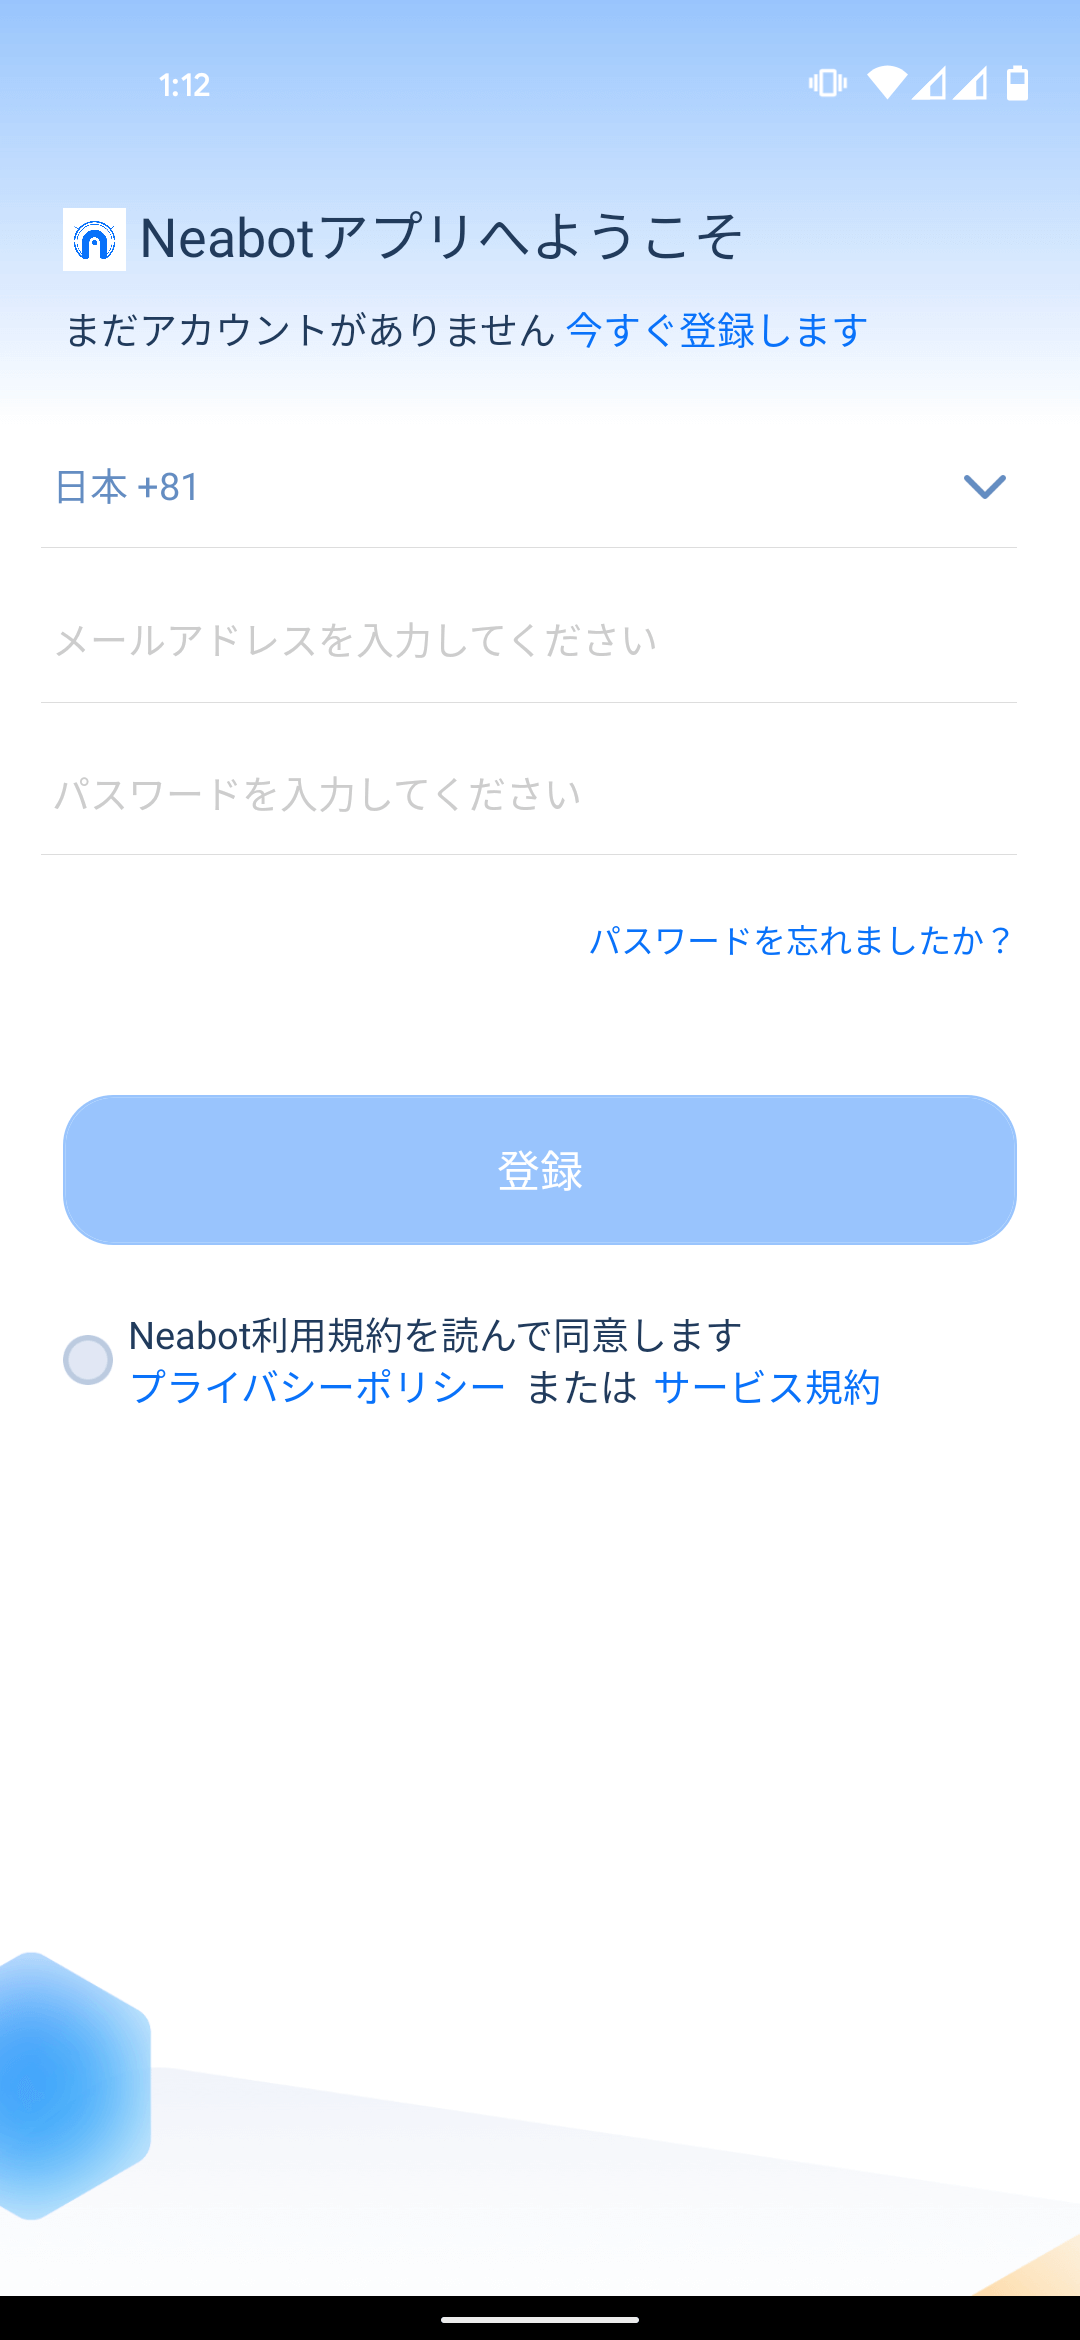 neabot NoMo Q11 専用アプリ 初期セットアップ アカウント登録画面